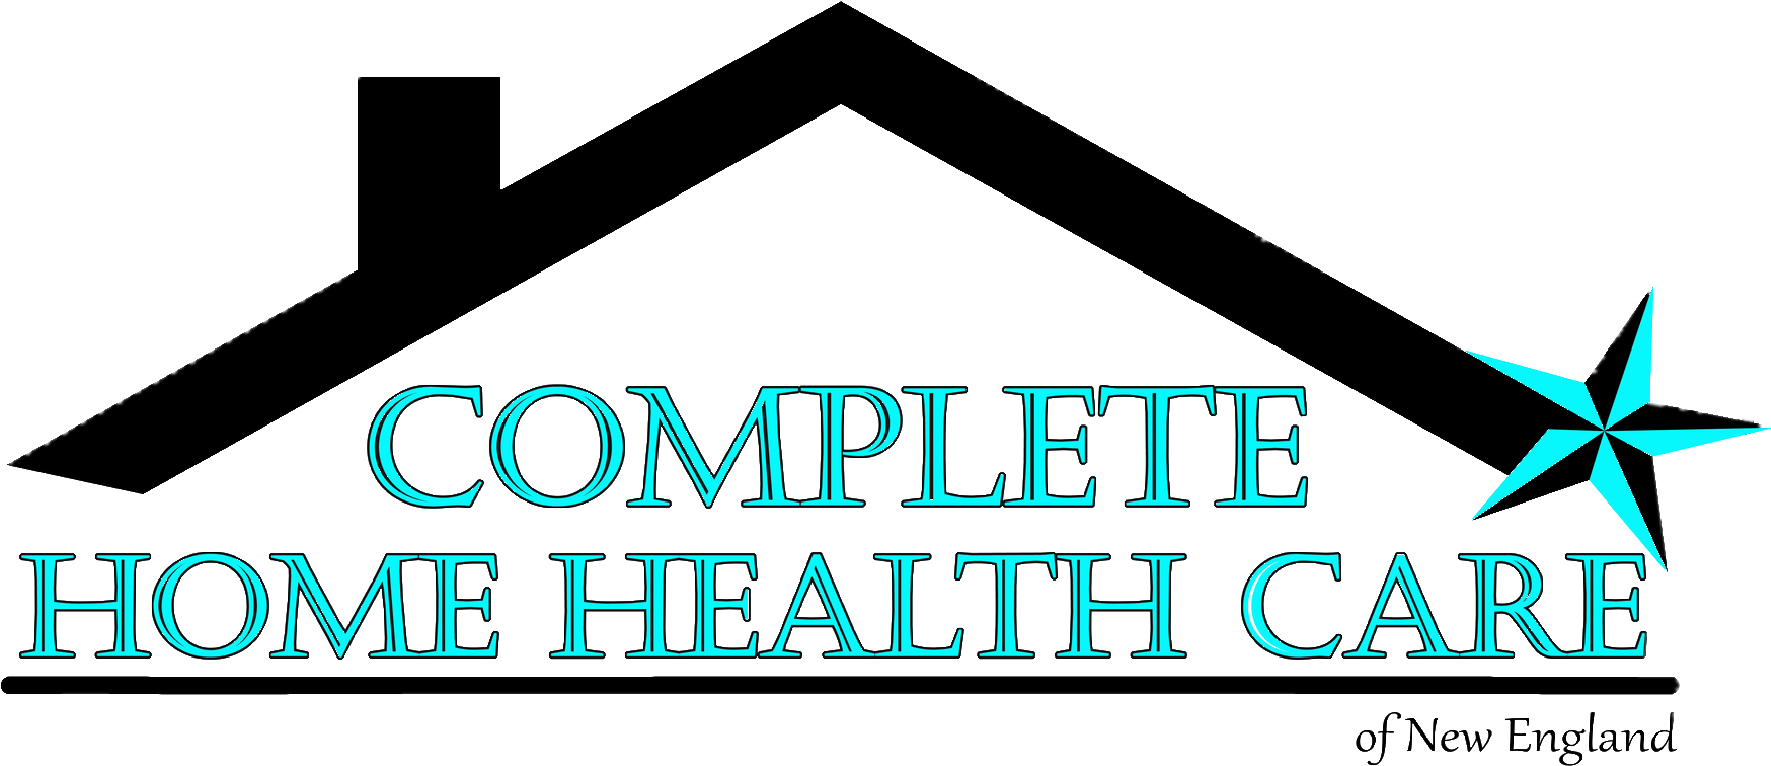 Complete Home Health Care - Graphic Design (1800x1080)